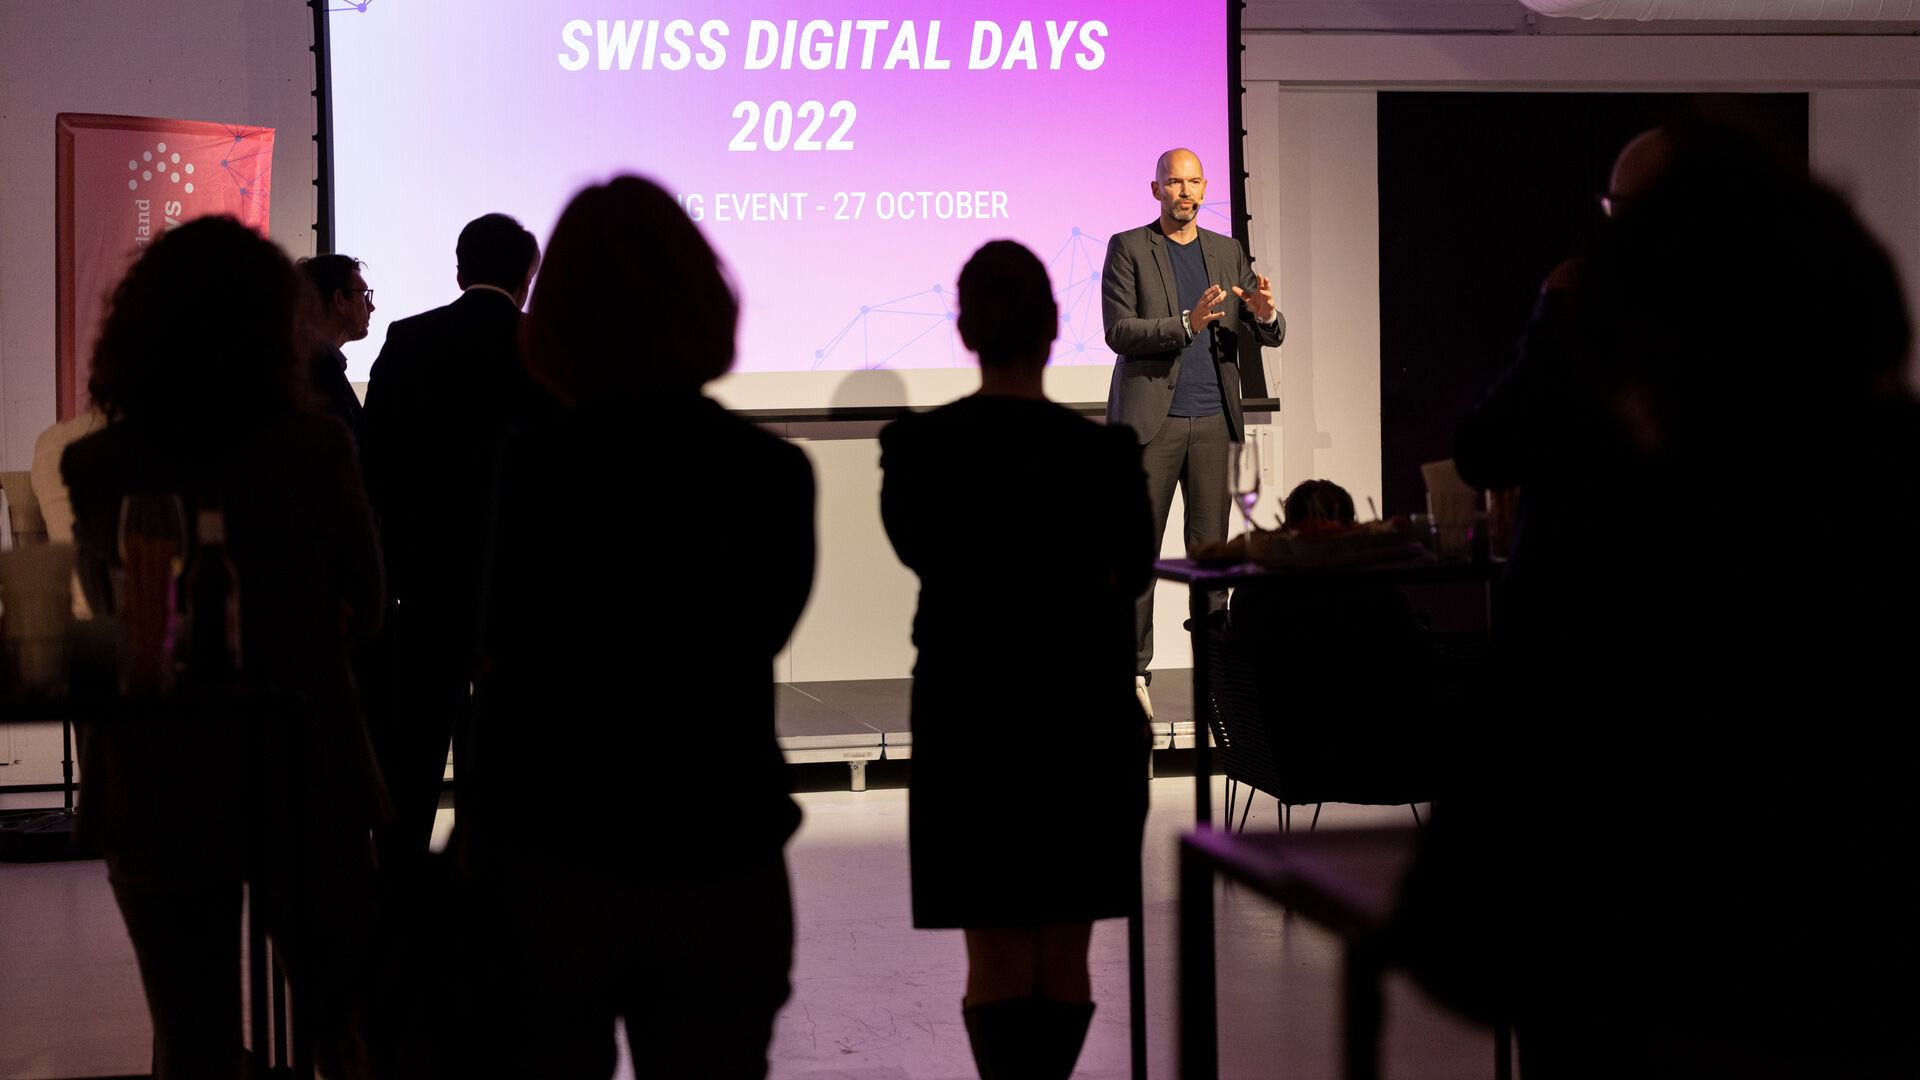 Swiss Digital Days: sự kiện bế mạc "Swiss Digital Days" 2022 tại Freiruum ở Zug (Zug) vào ngày 27 tháng XNUMX